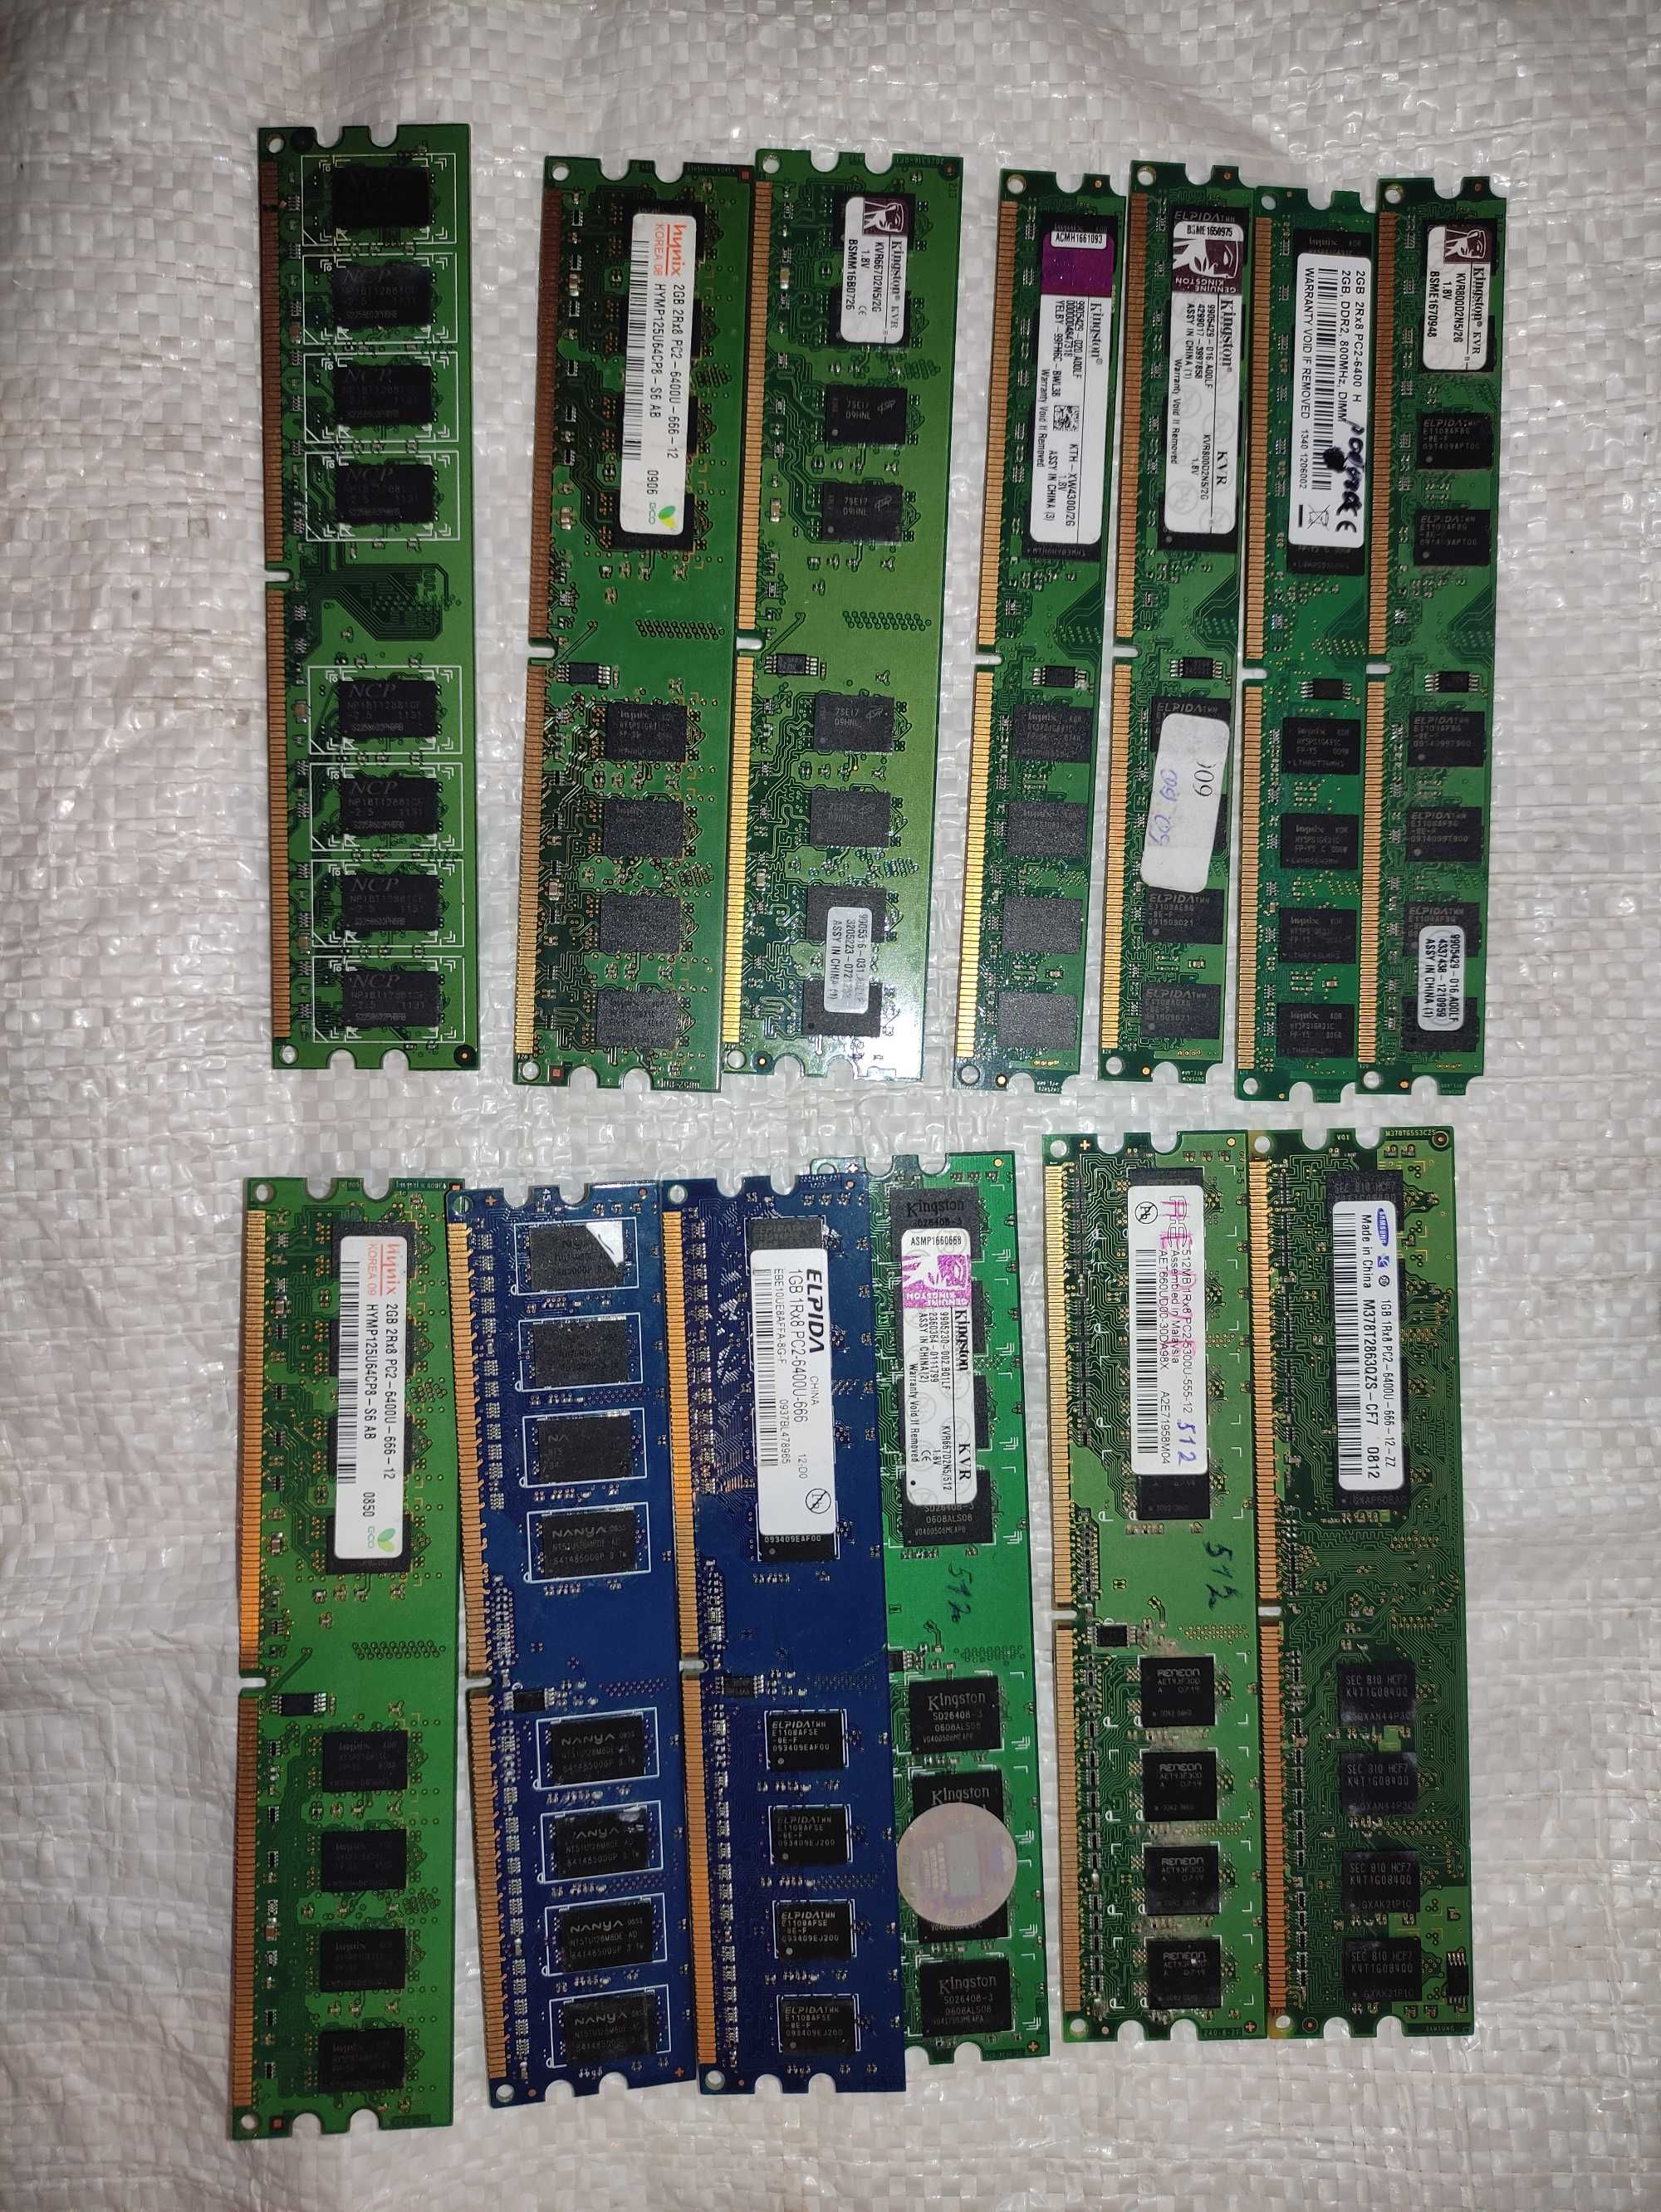 ОЗУ DDR2 планки по 2 GB парами